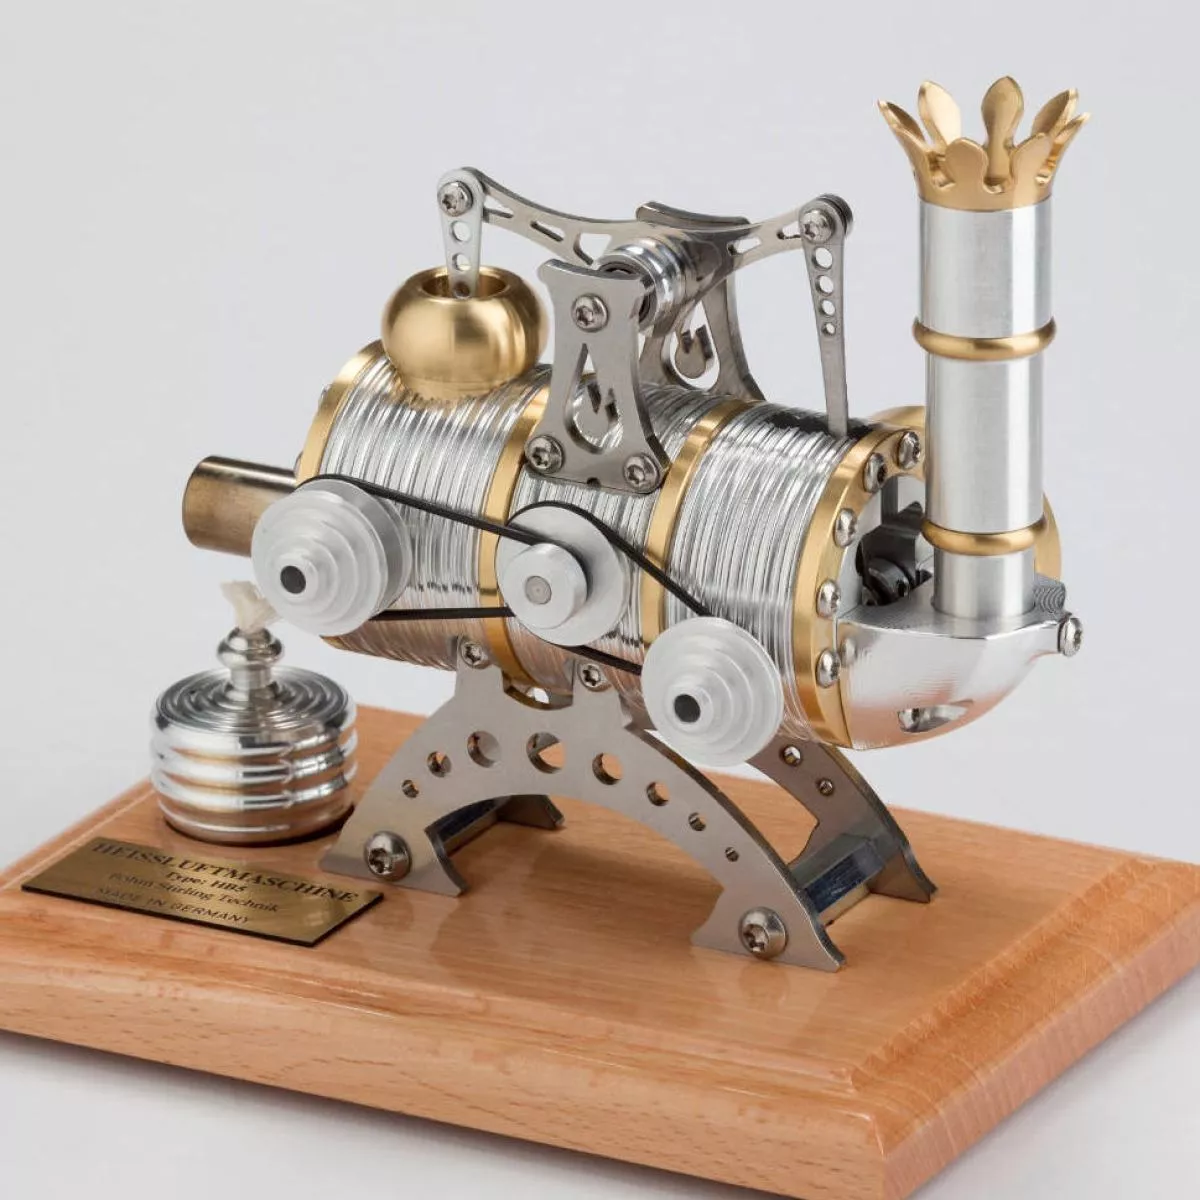 Kleines Kraftwerk mit Stirling-Motor im Steampunk-Design